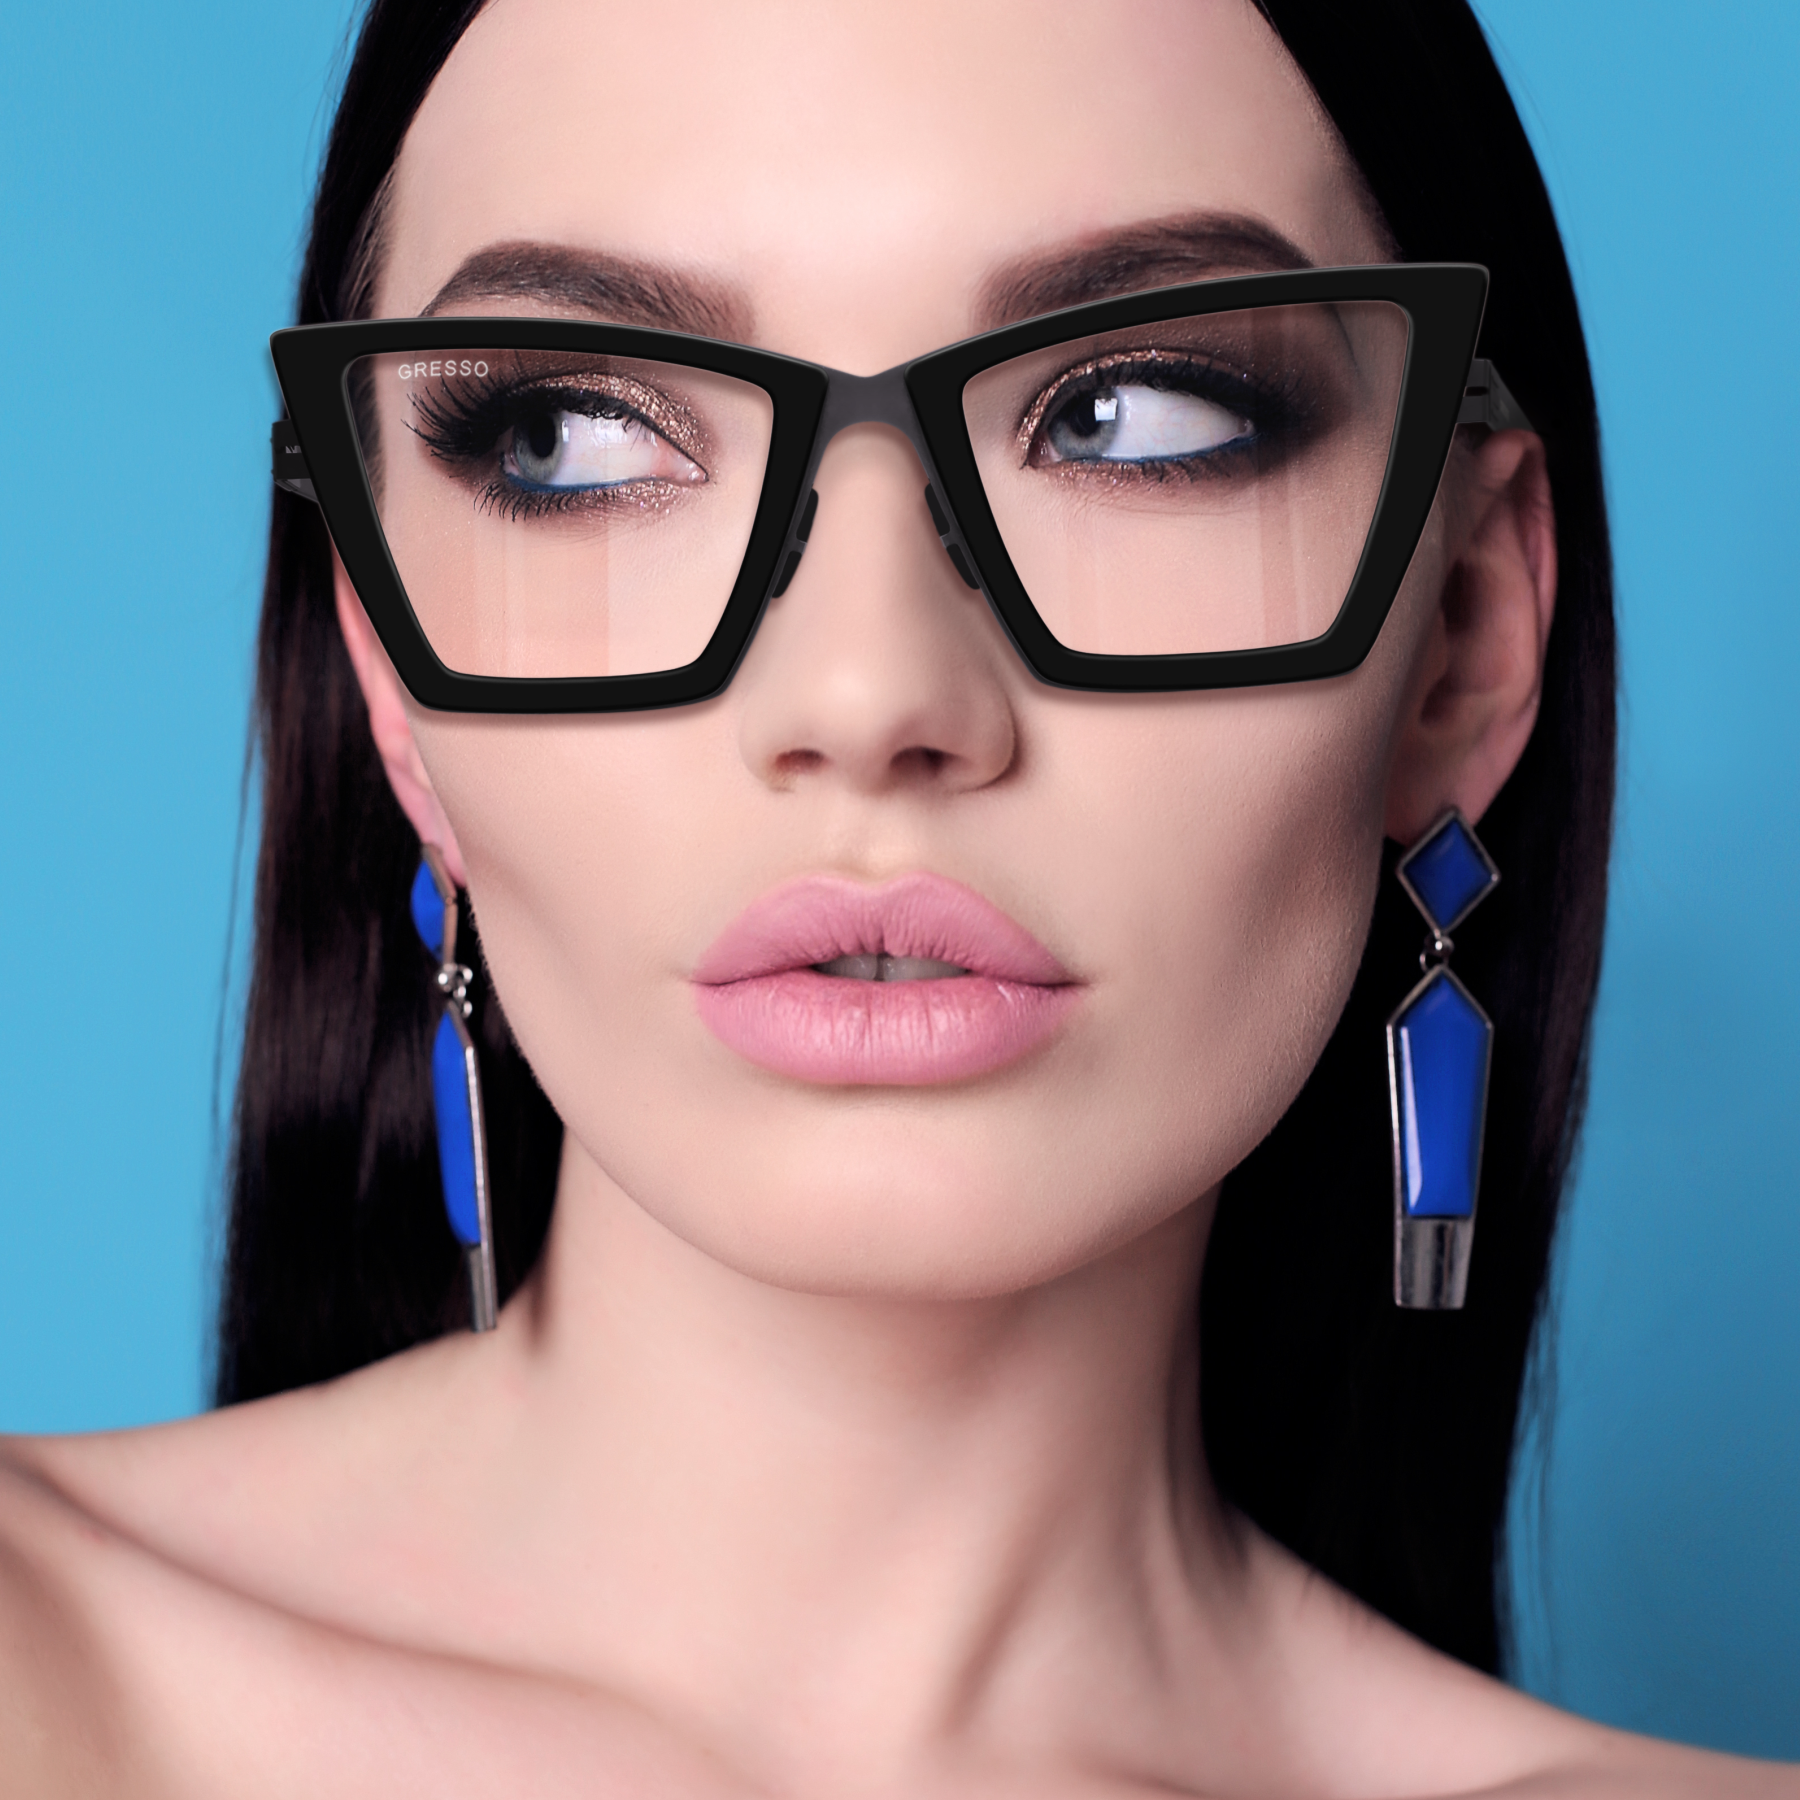 Купить онлайн или в салонах оптики в Москве и Санкт-Петербурге мужские титановые очки для зрения GRESSO Alba с диоптриями, изготовленные по вашему рецепту. Воспользуйтесь услугой бесплатной проверки зрения и консультацией опытного врача-офтальмолога.